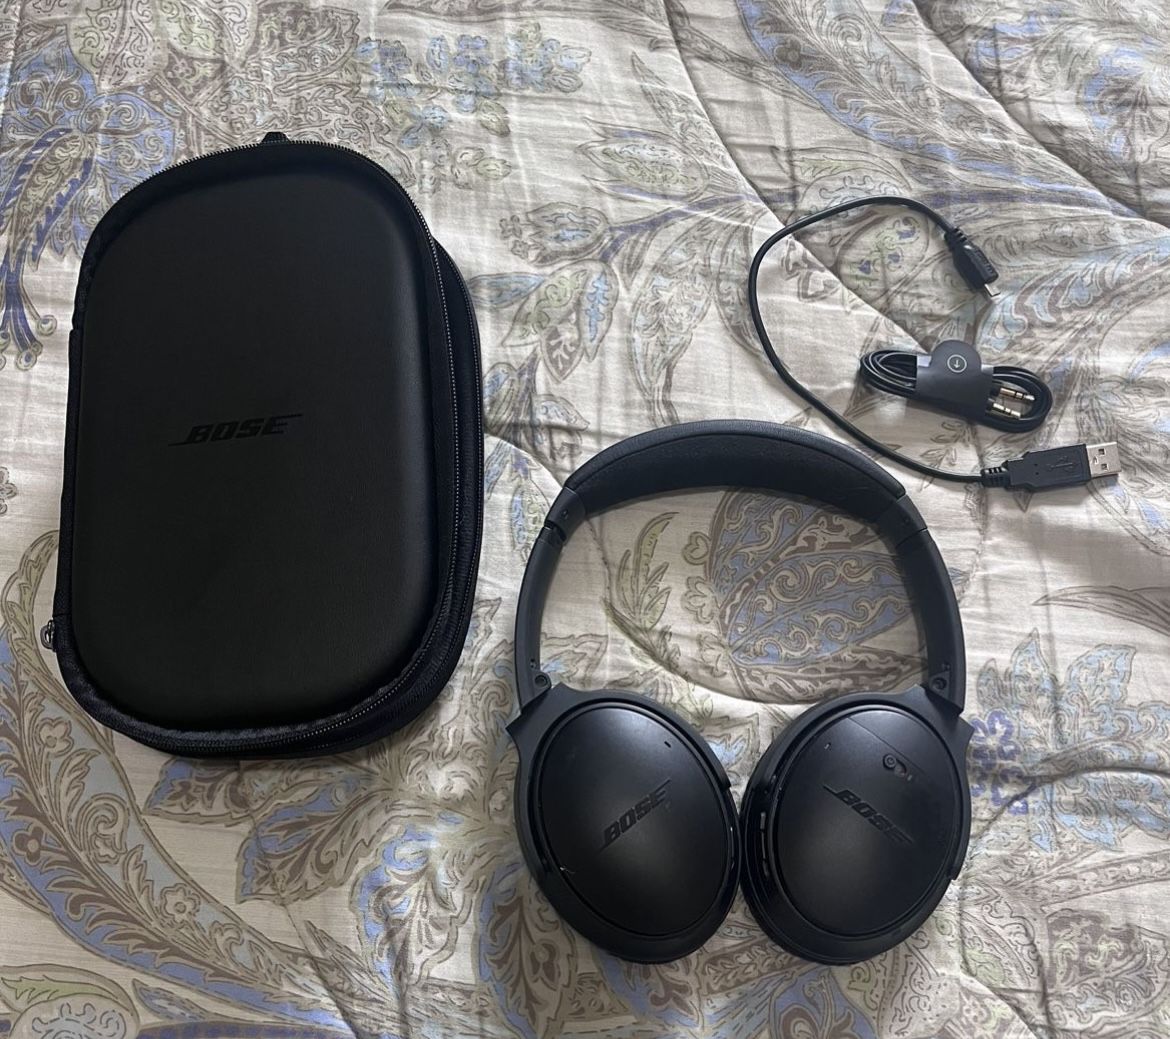 Bose Quiet Comfort 35 II Wireless Bluetooth Headphones